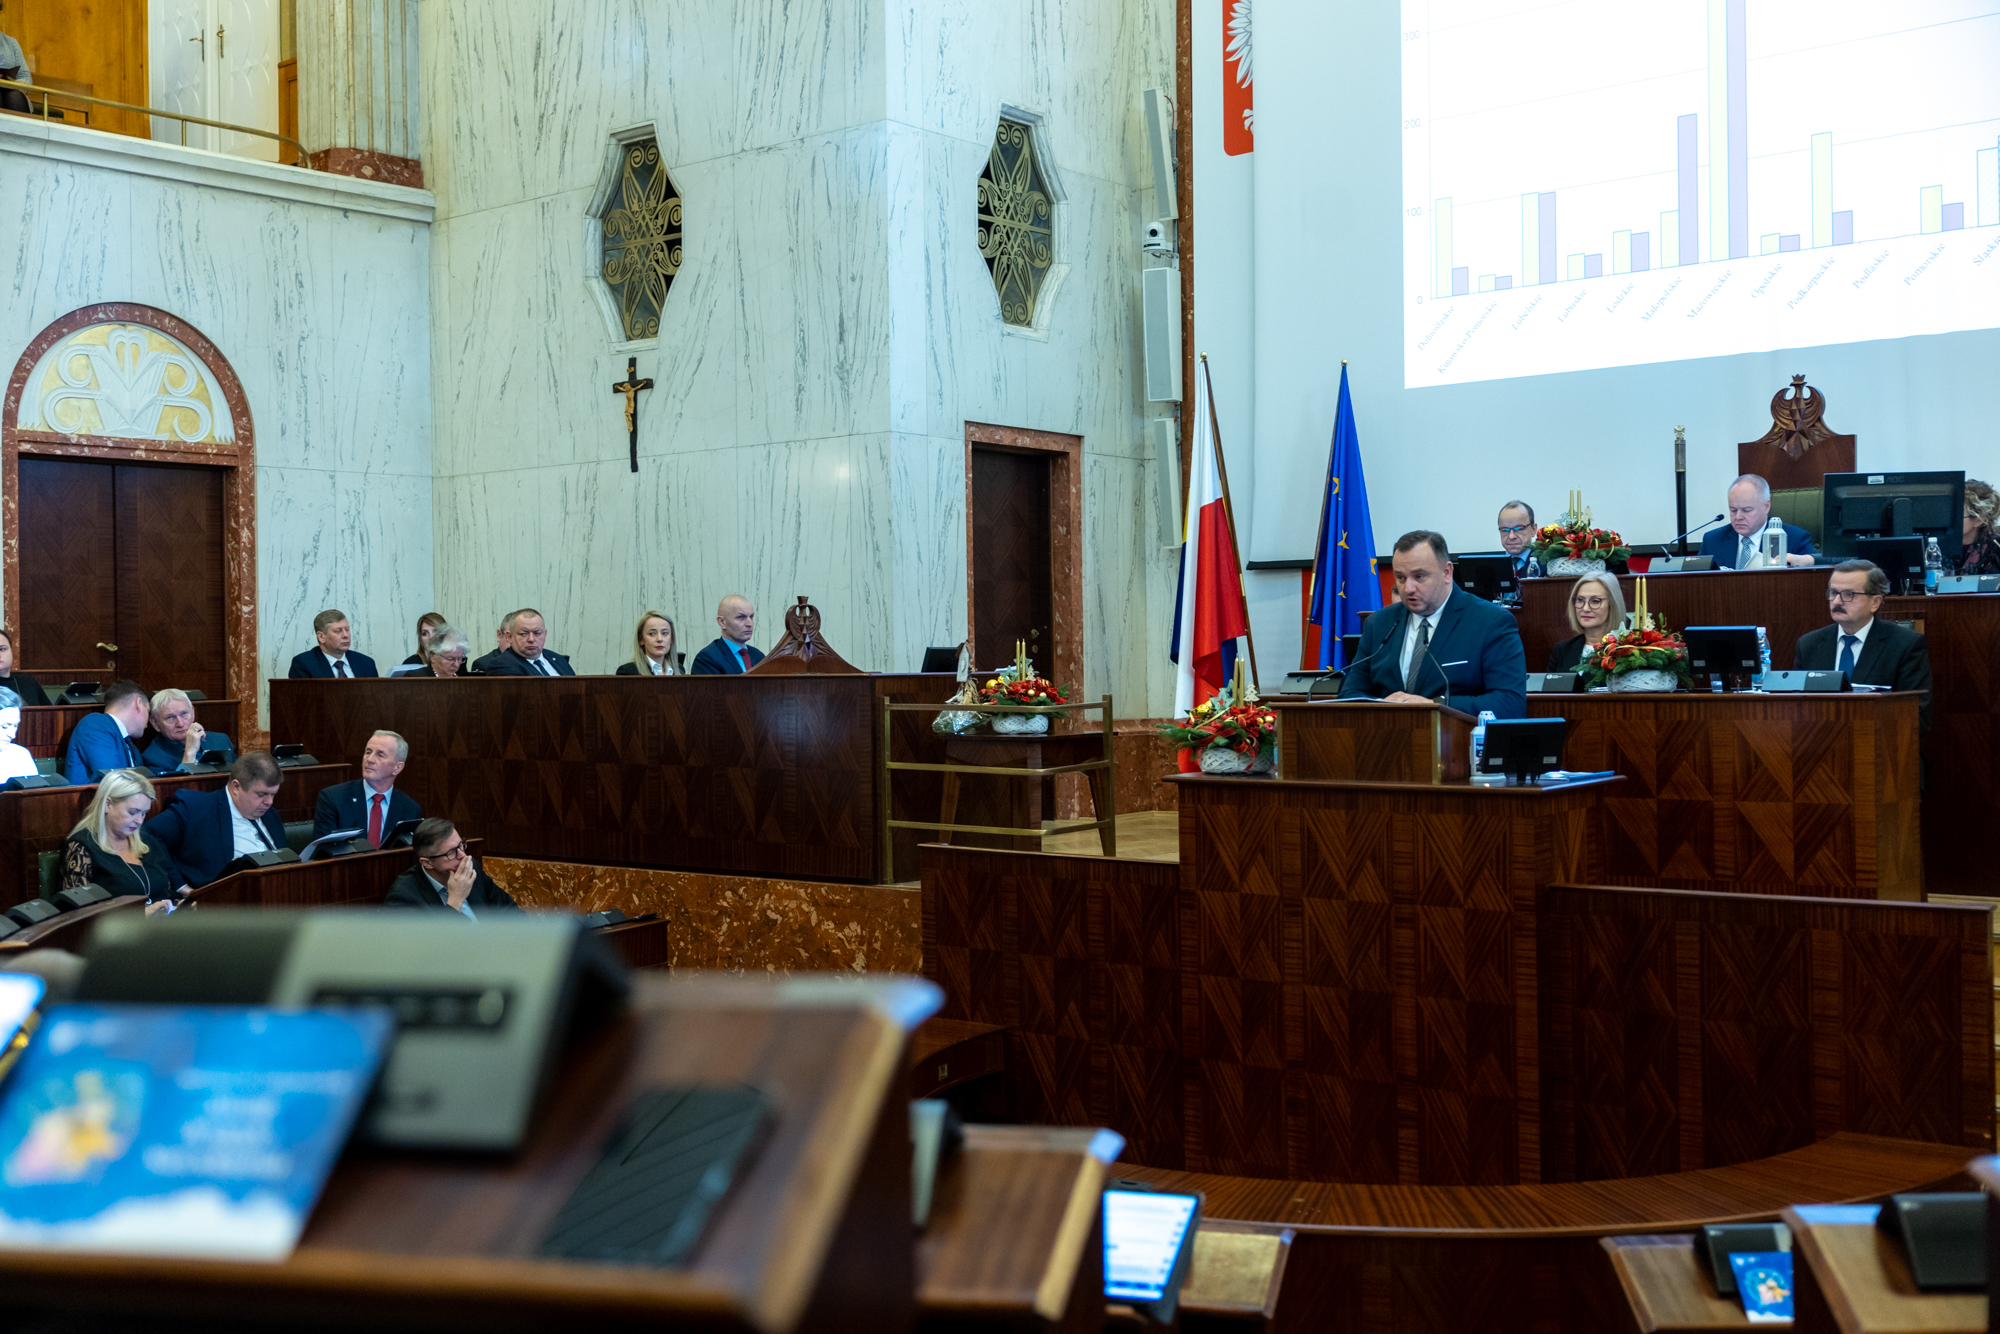 sala Sejmu podczas obrad Sejmiku - widok z oddali w ławach zasiadają ludzie